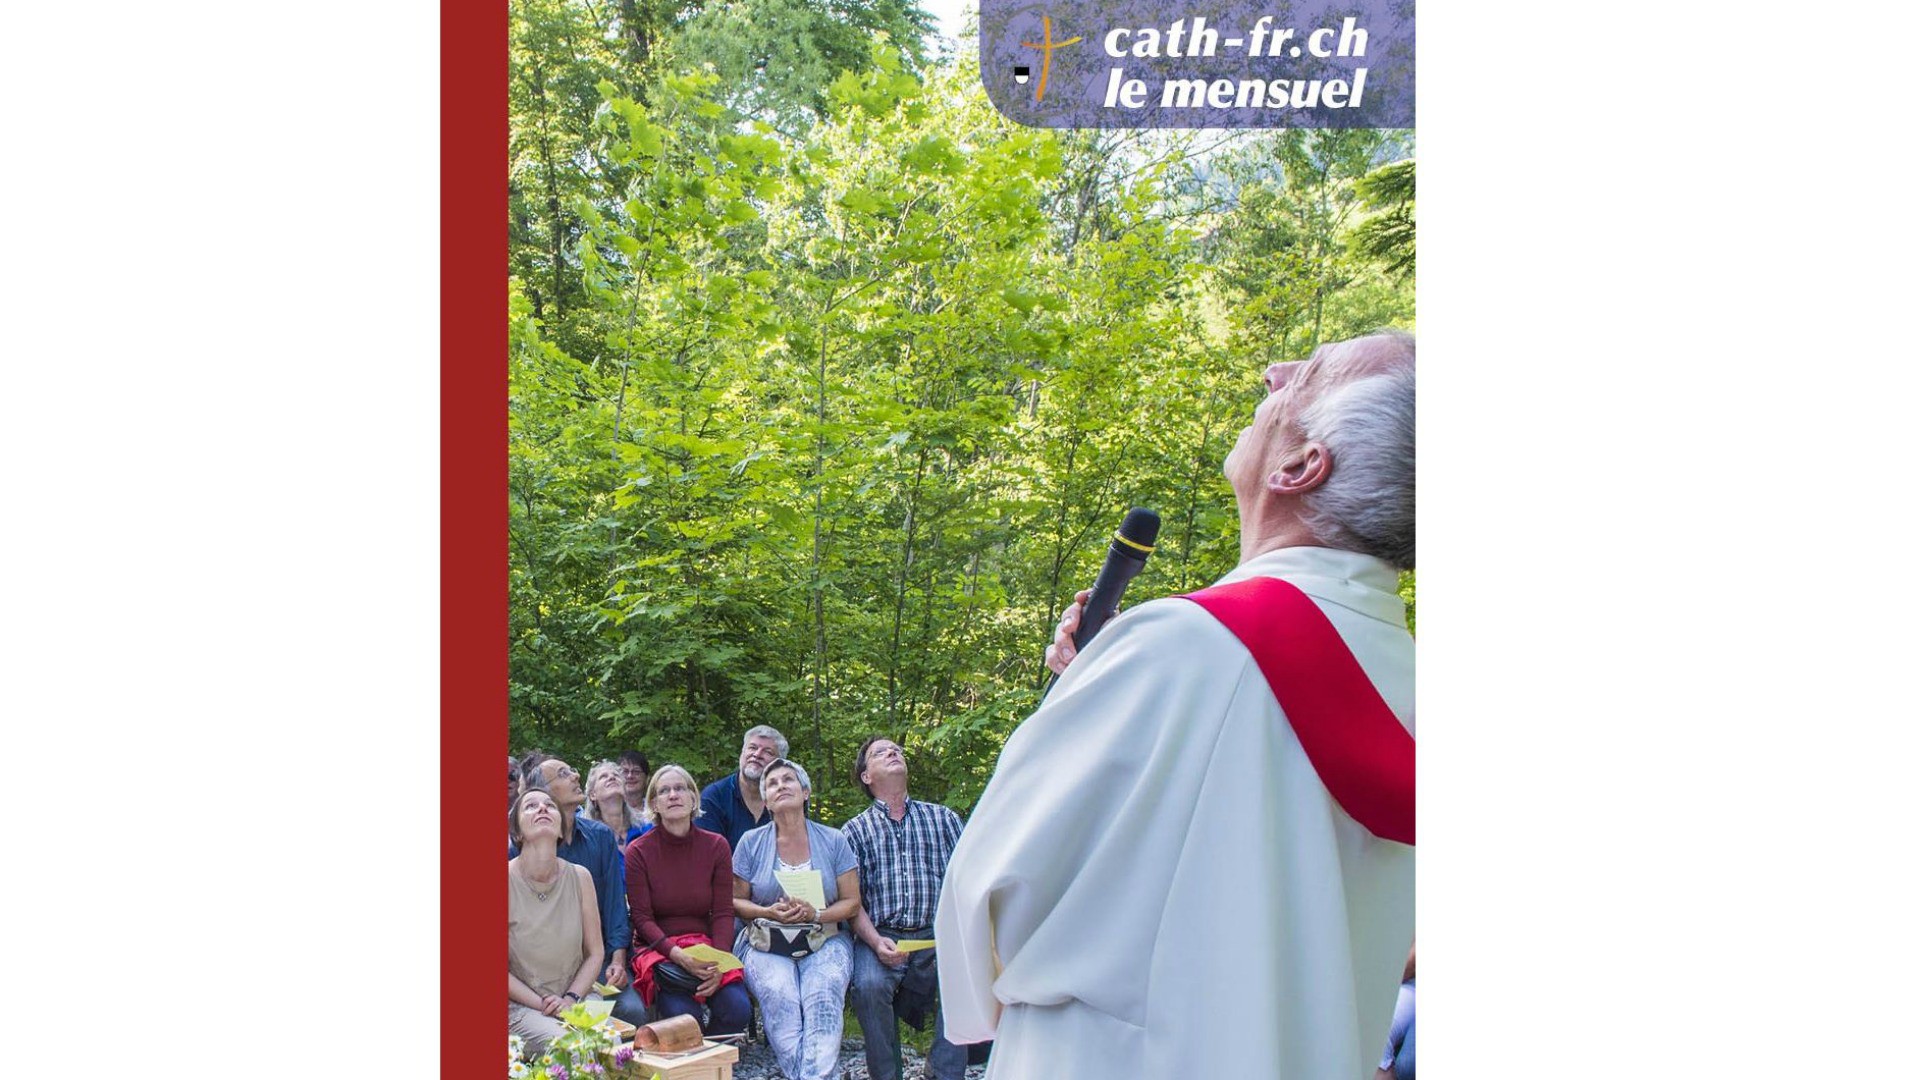 Couverture du mensuel cath-fr.ch de mai 2015